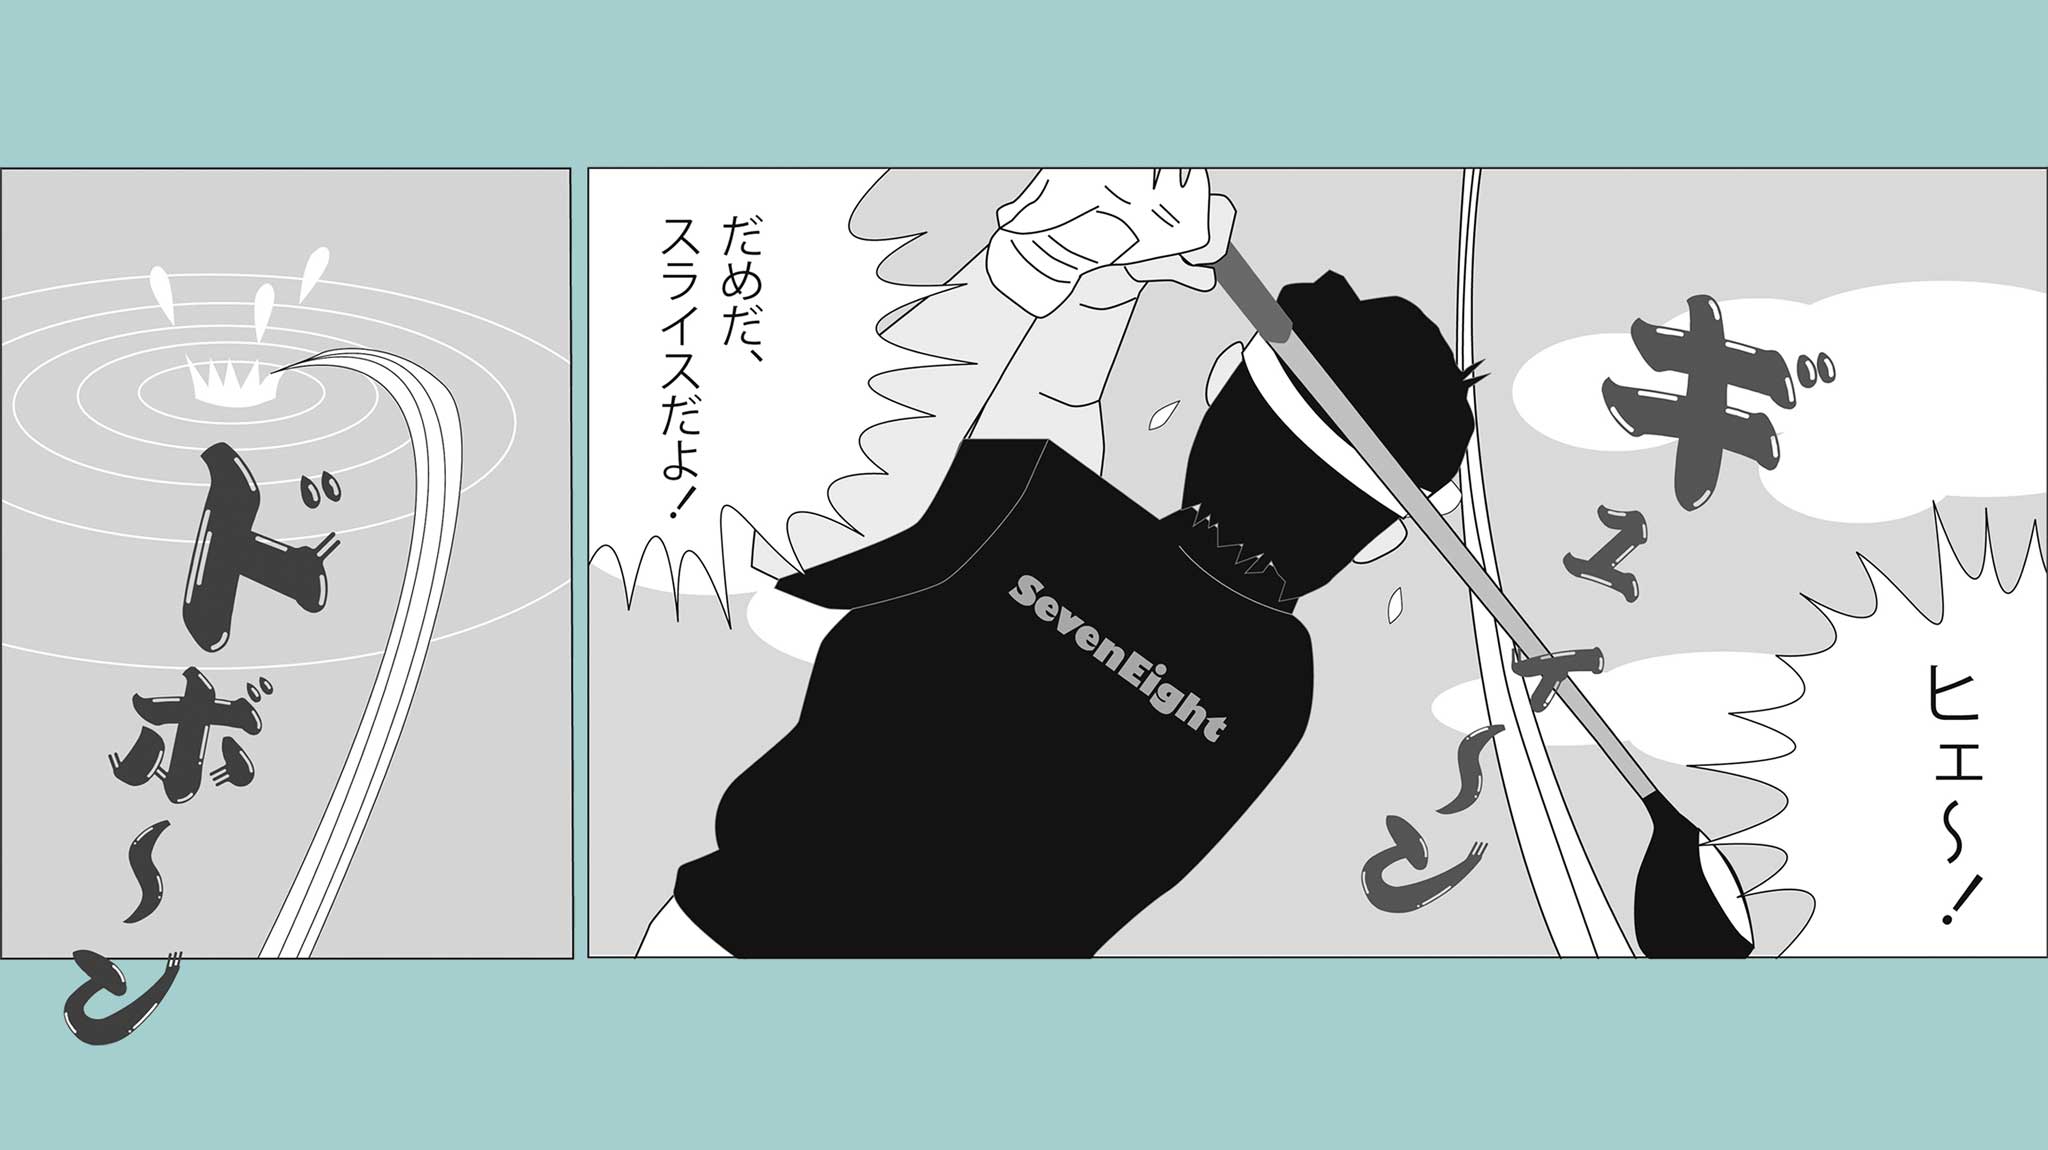 関西ゴルフサークル セブンエイトの漫画募集ページのイメージ